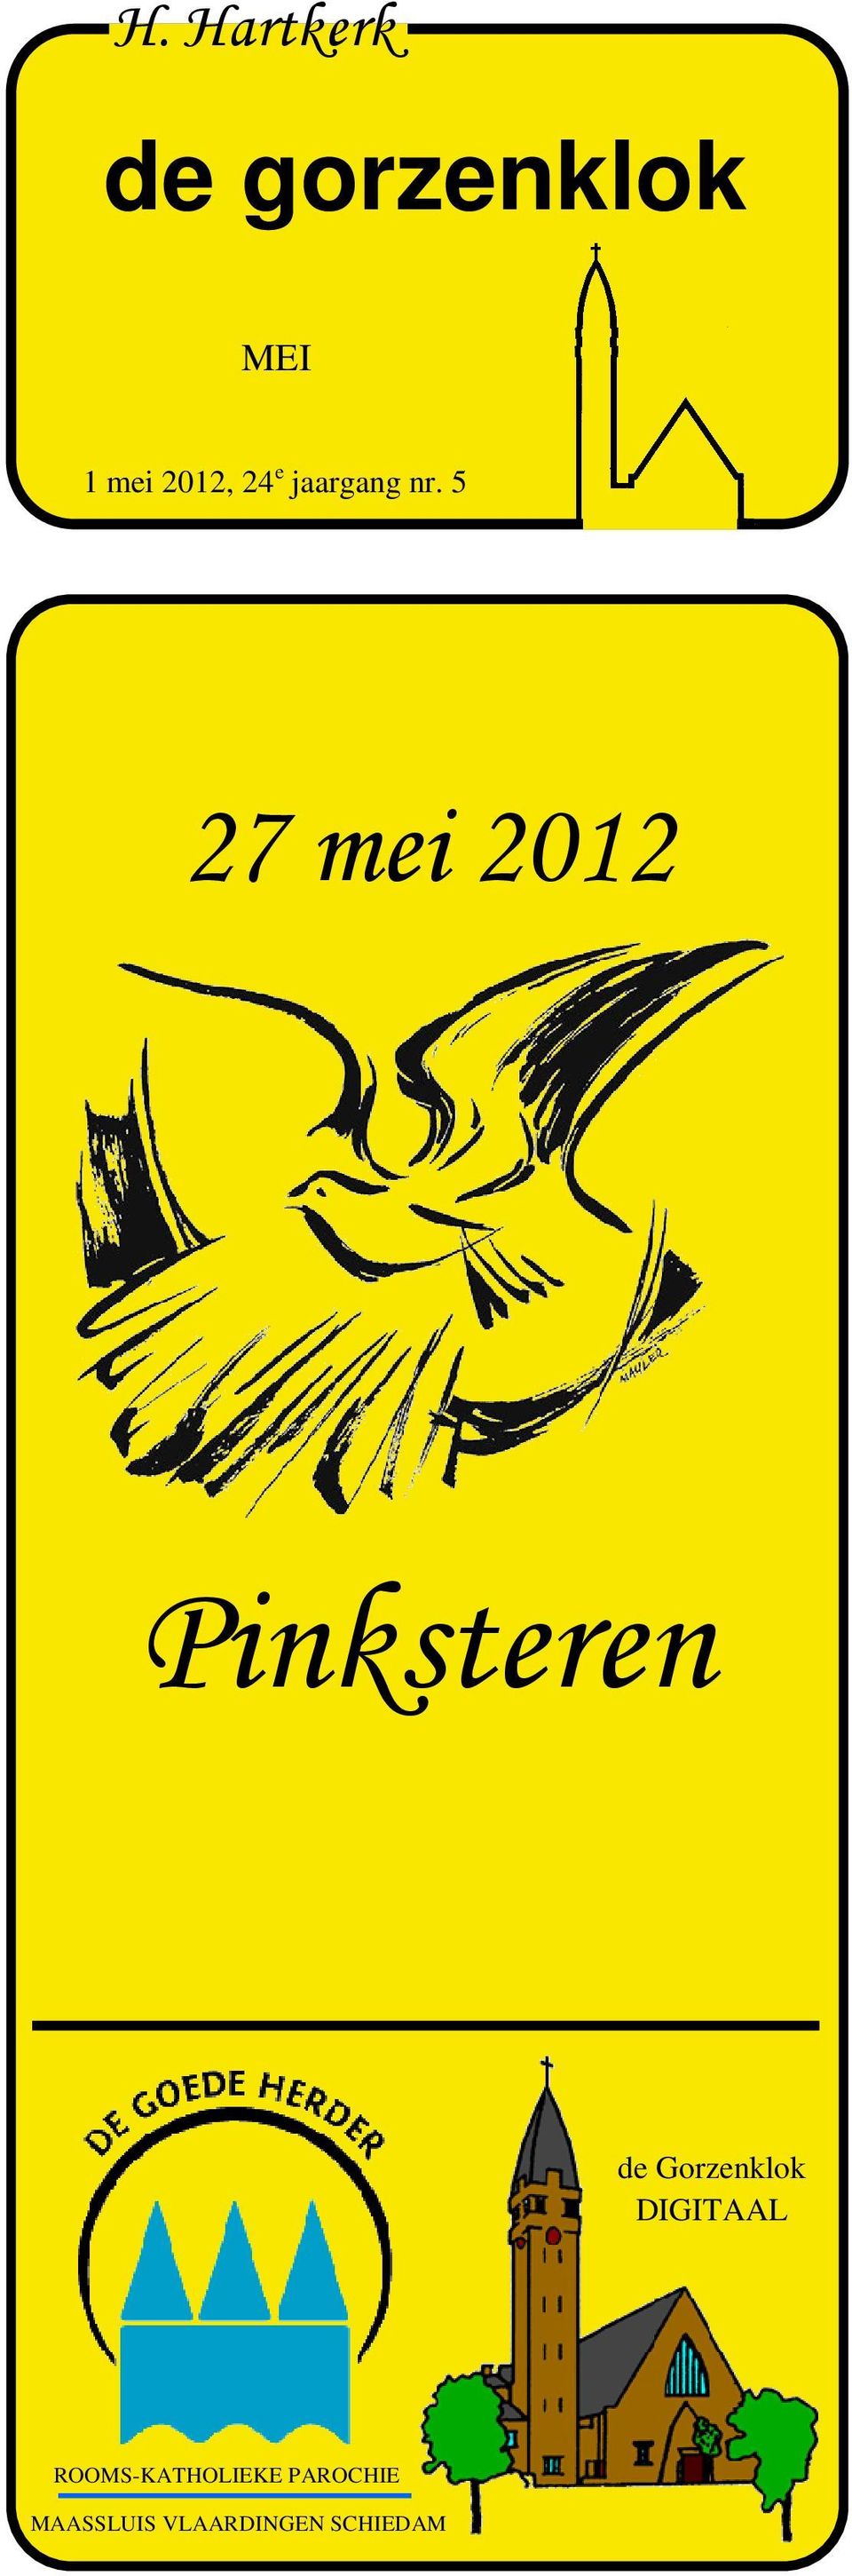 5 27 mei 2012 Pinksteren de Gorzenklok